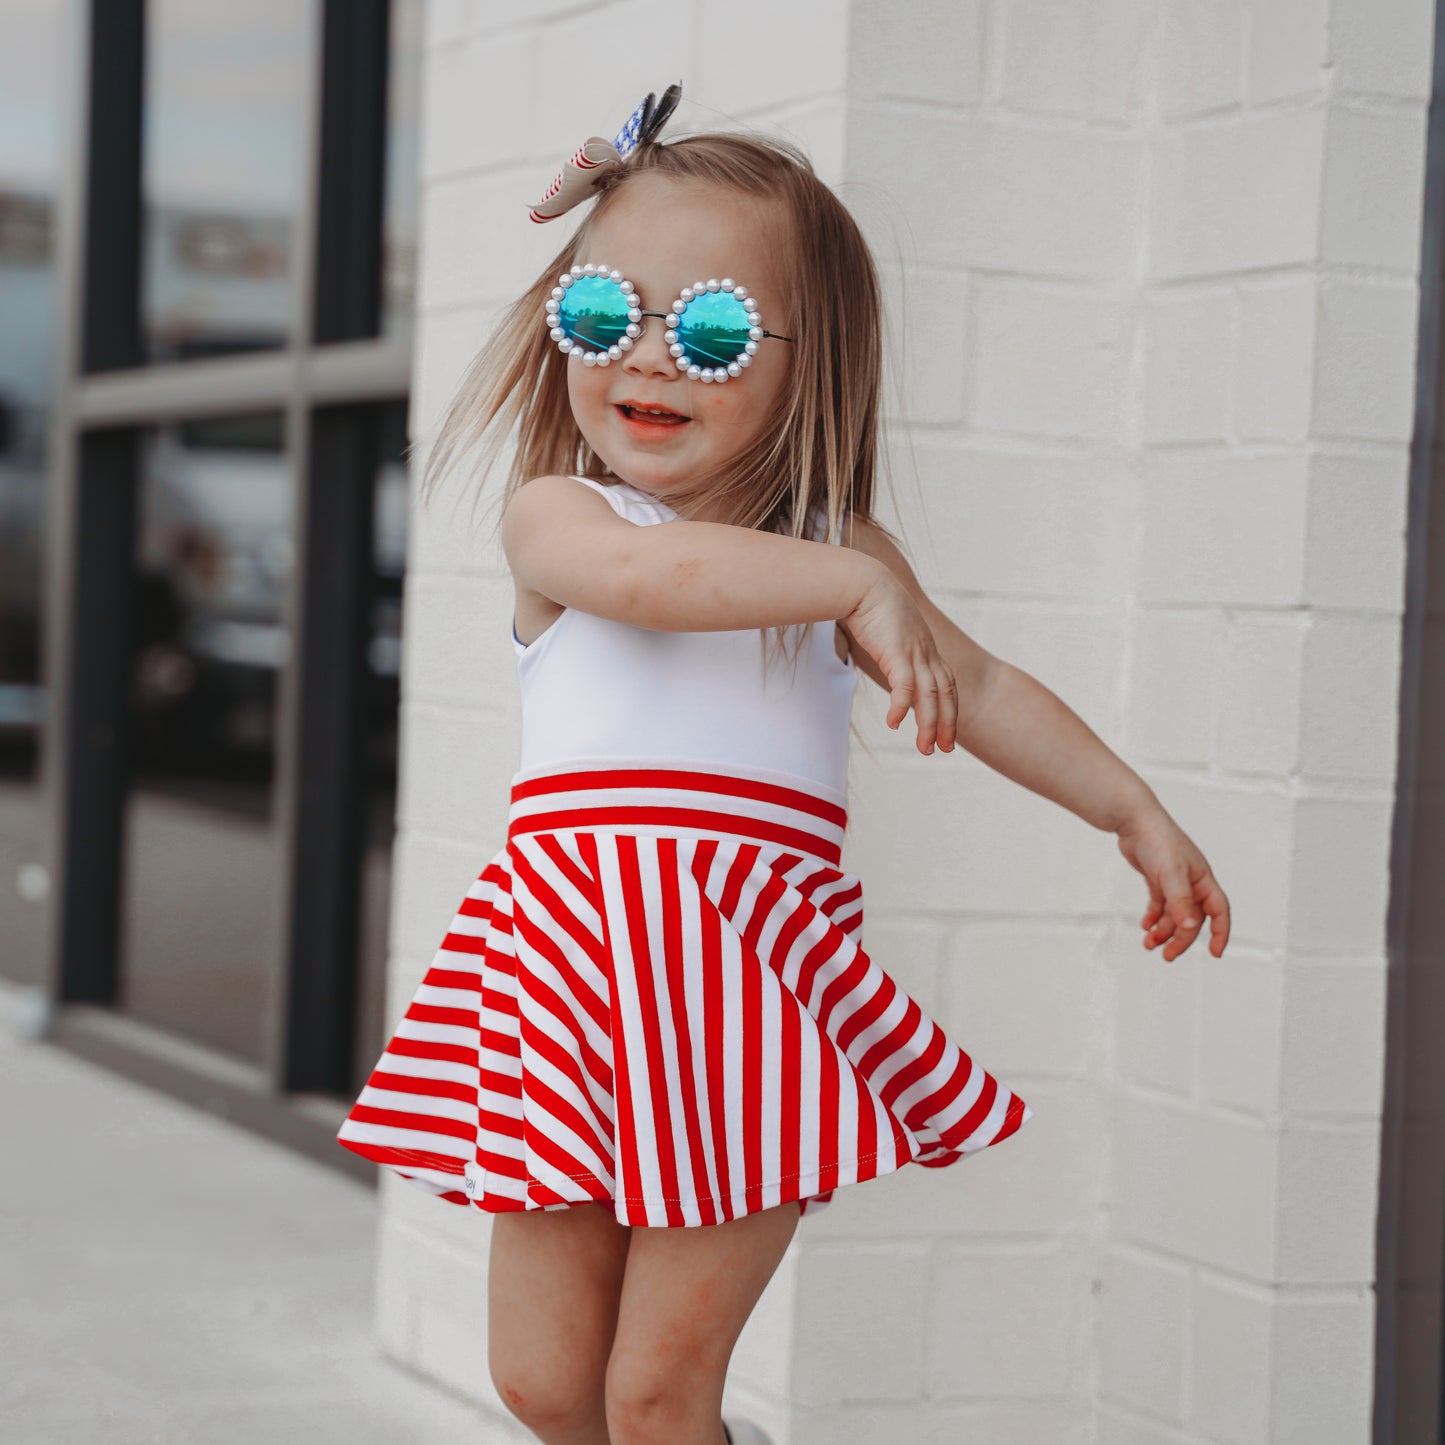 Twirl Skirt - Red/White Stripes